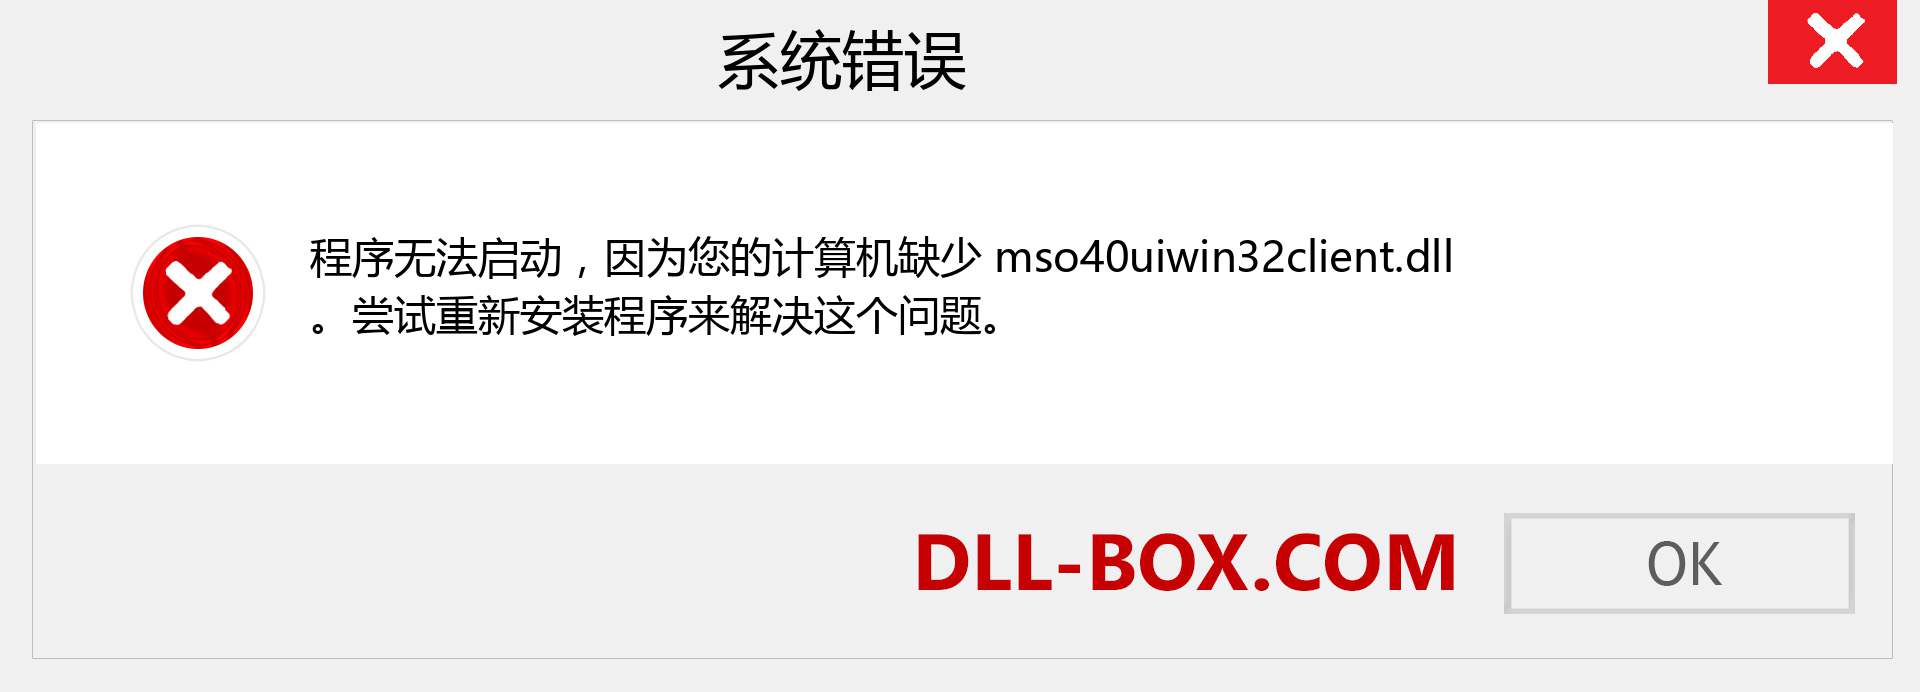 mso40uiwin32client.dll 文件丢失？。 适用于 Windows 7、8、10 的下载 - 修复 Windows、照片、图像上的 mso40uiwin32client dll 丢失错误